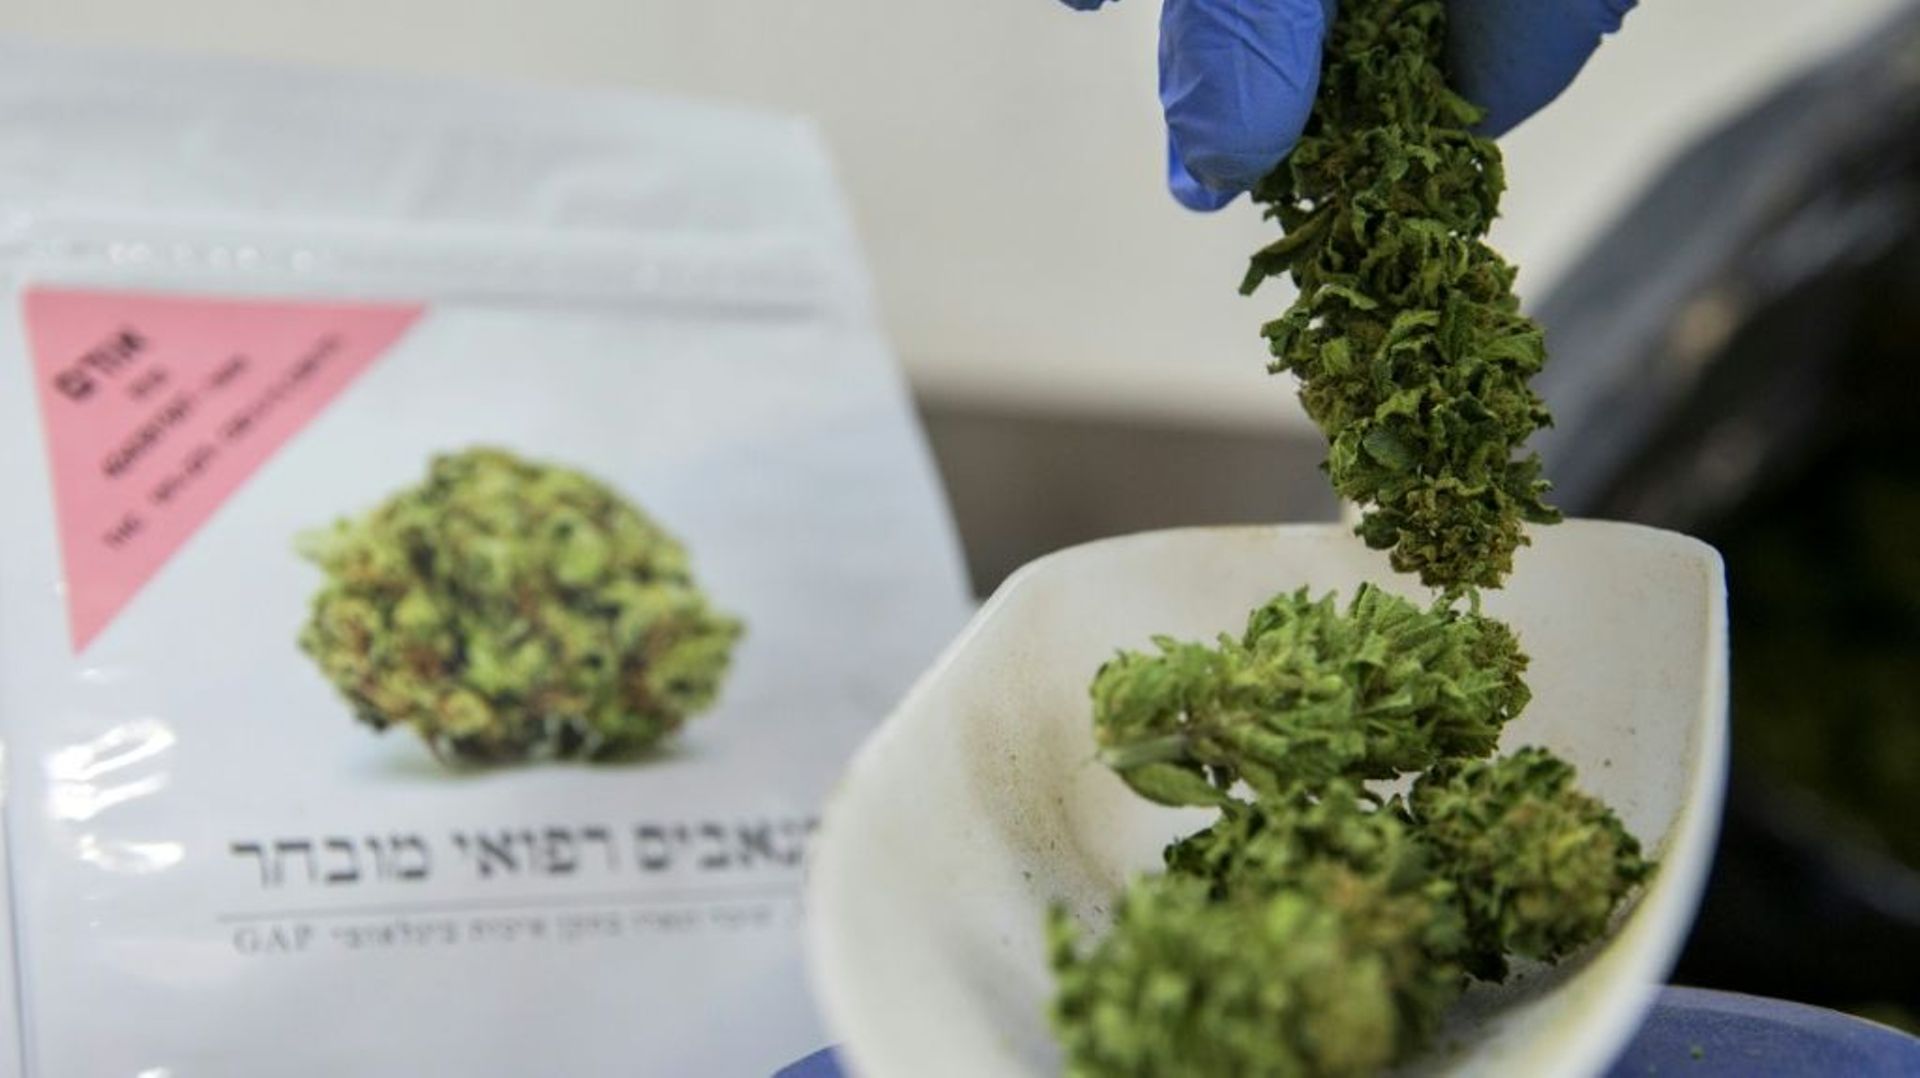 Pesée de cannabis à usage médical dans une plantation dans le nord d'Israël, le 9 mars 2016